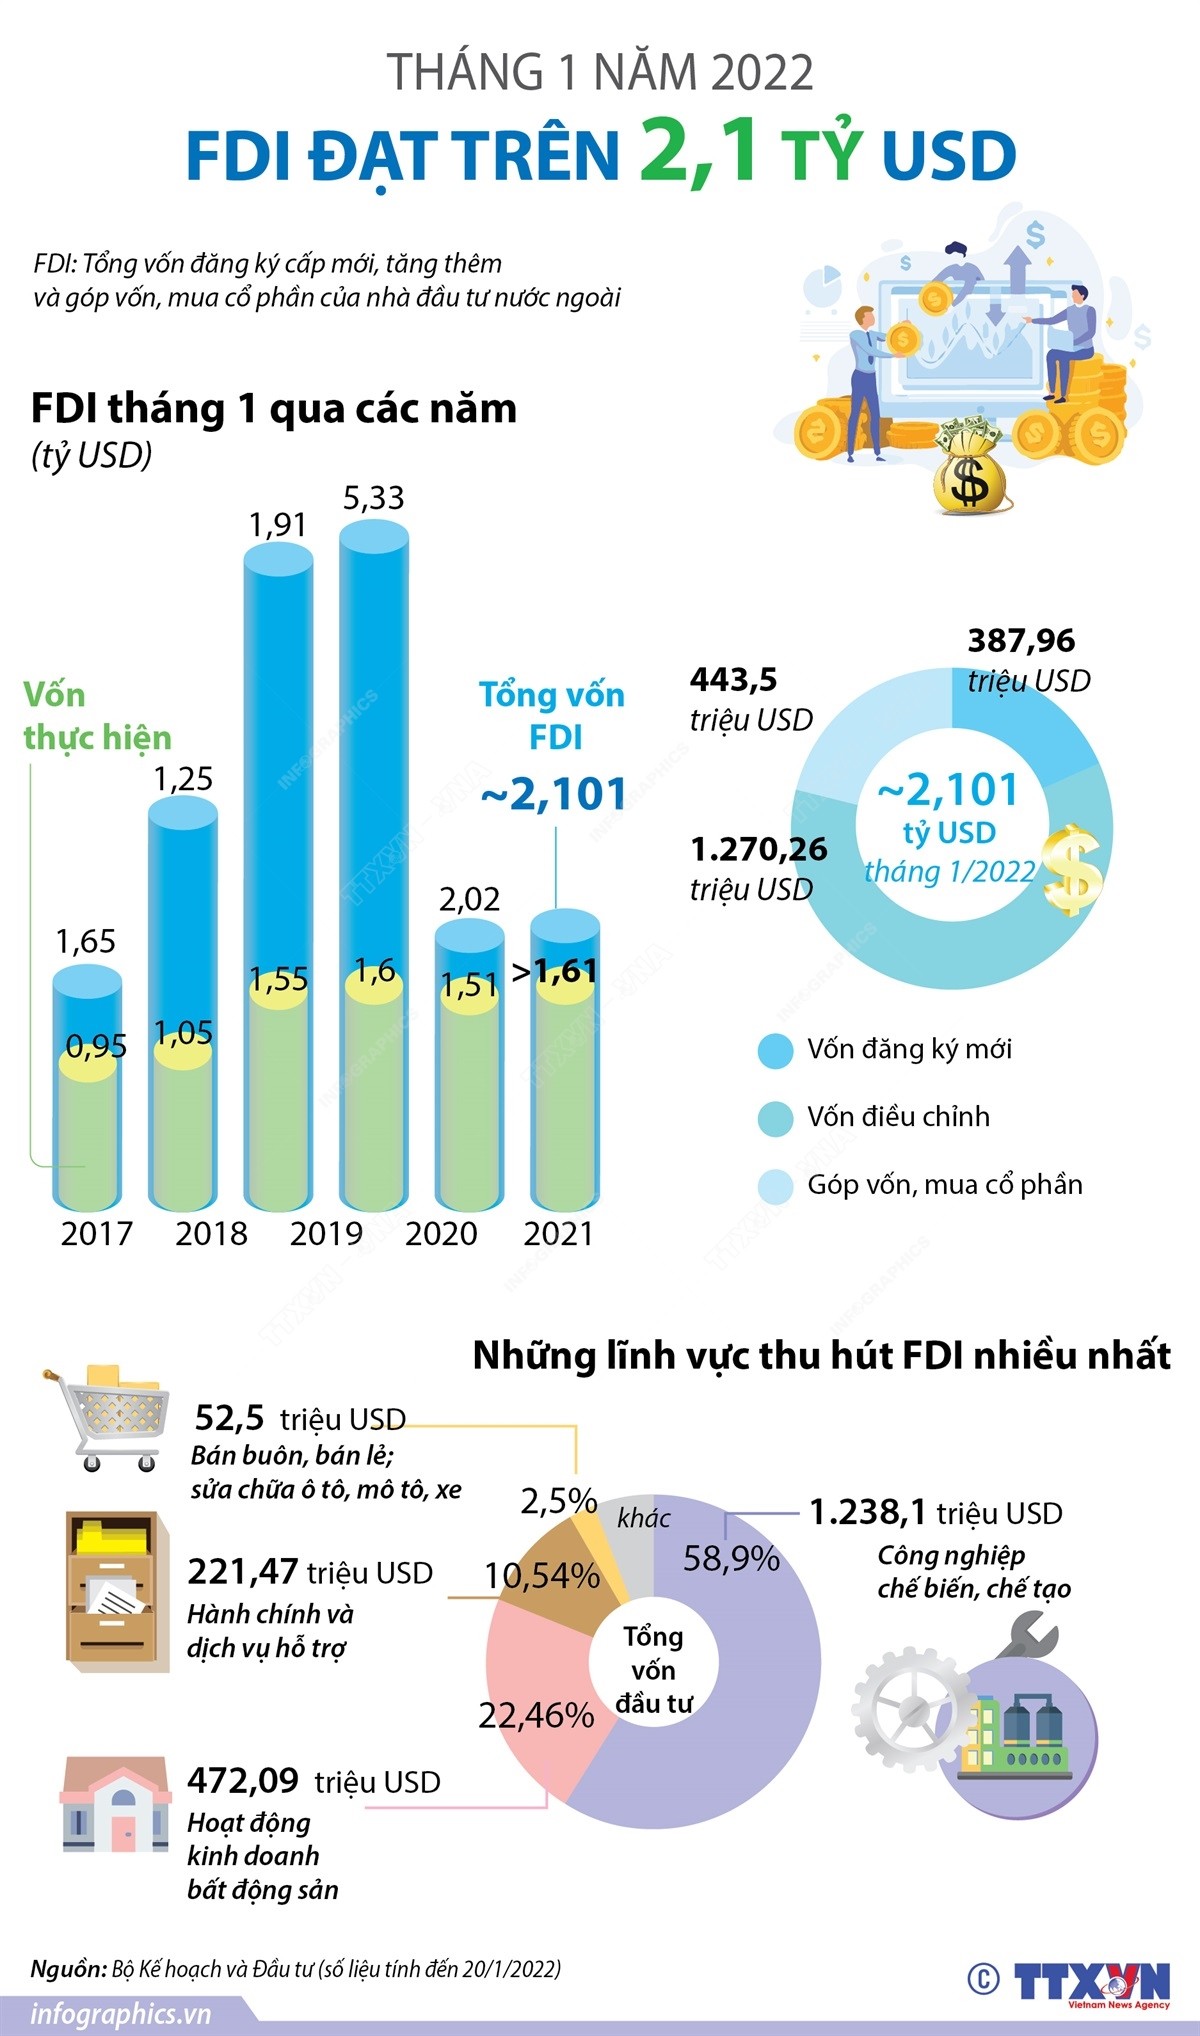 Tháng 1 năm 2022: FDI đạt trên 2,1 tỷ USD